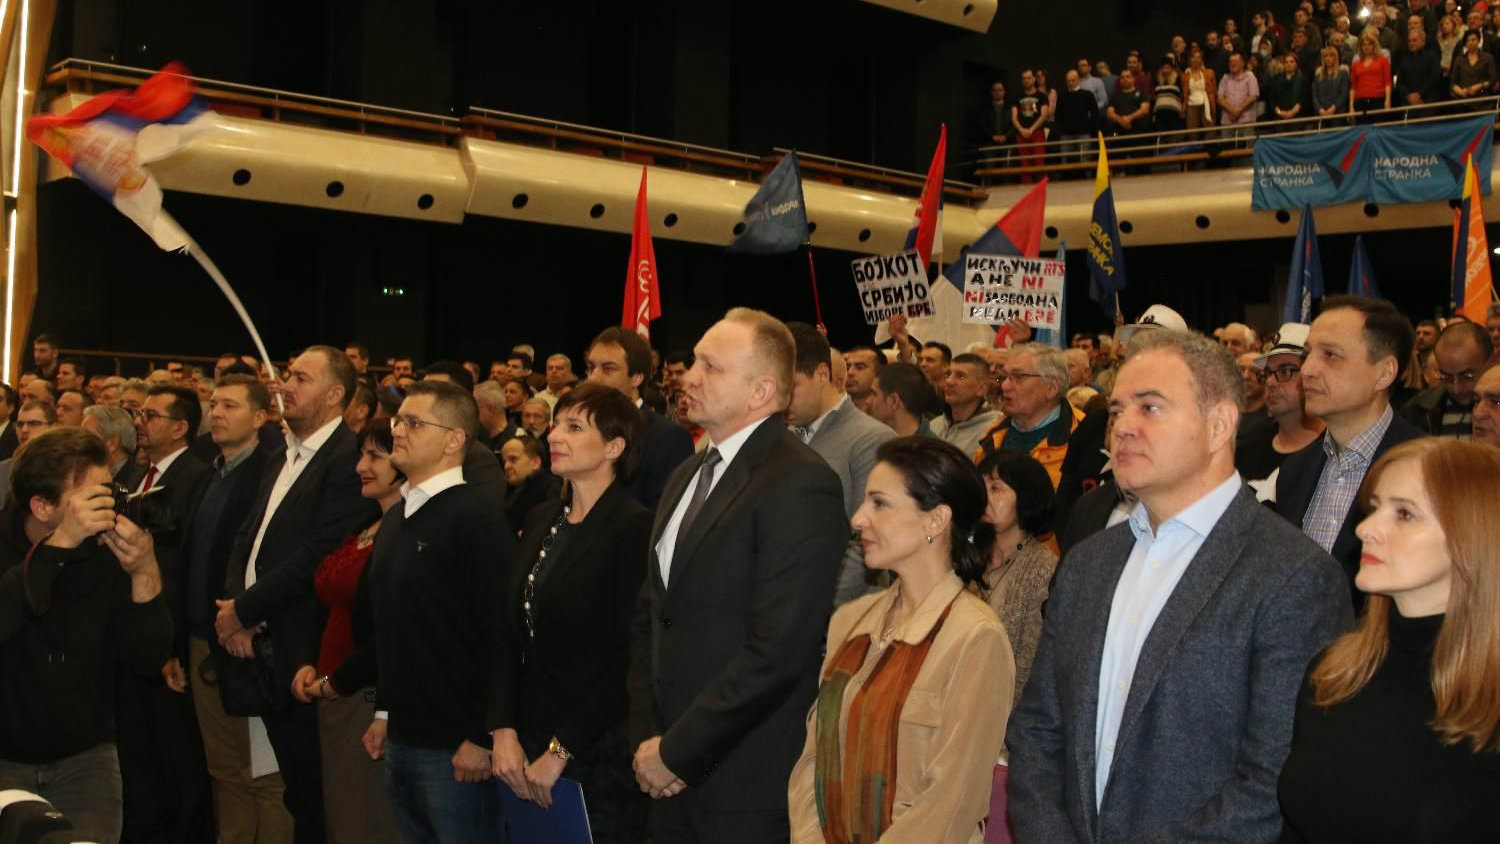 Opozicija počela kampanju bojkota izbora, Đilas kaže da su "poslušali svoj narod" 2